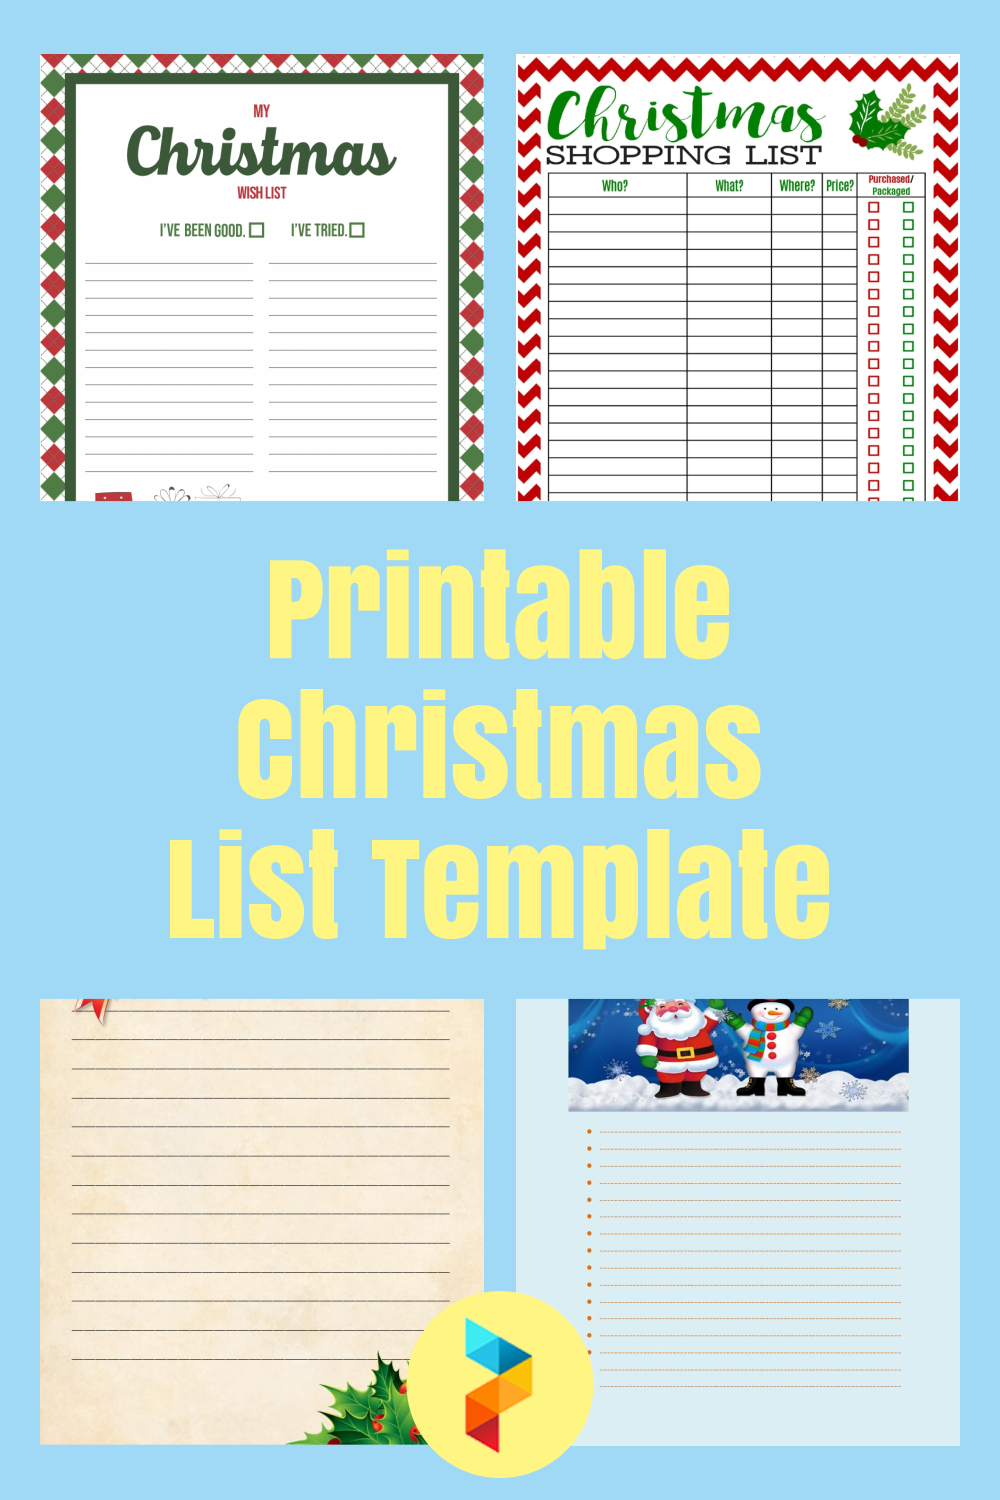 Printable Christmas List Template